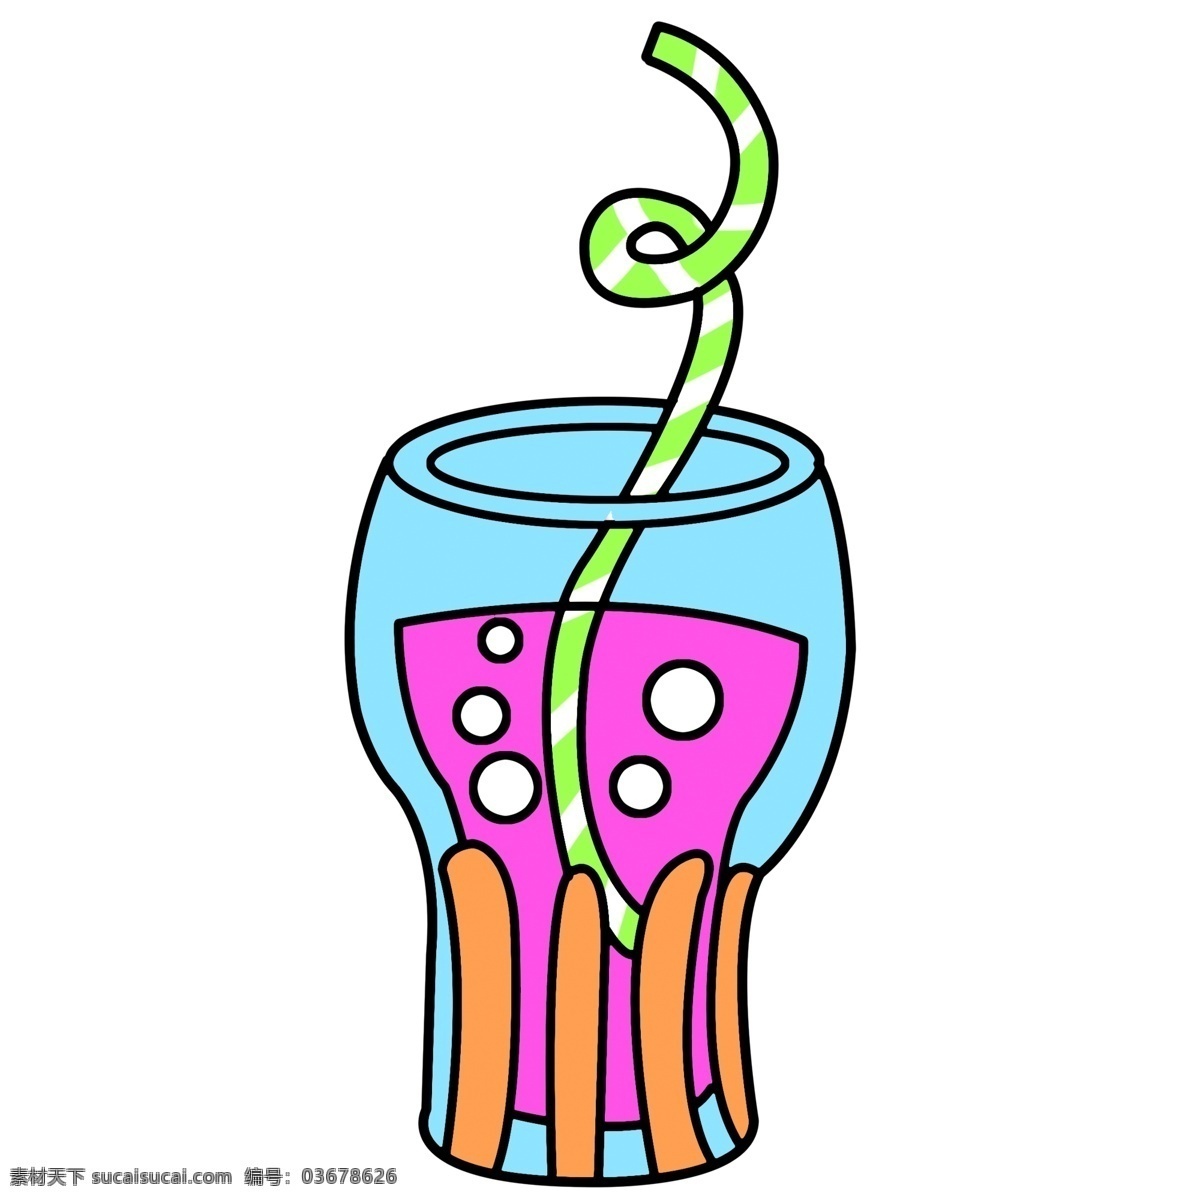 饮料 美味 免 抠 图 解渴饮料 新鲜美味 夏季饮料 清香四溢 饮料瓶 吸管 塑料杯 卡通手绘 饮料水